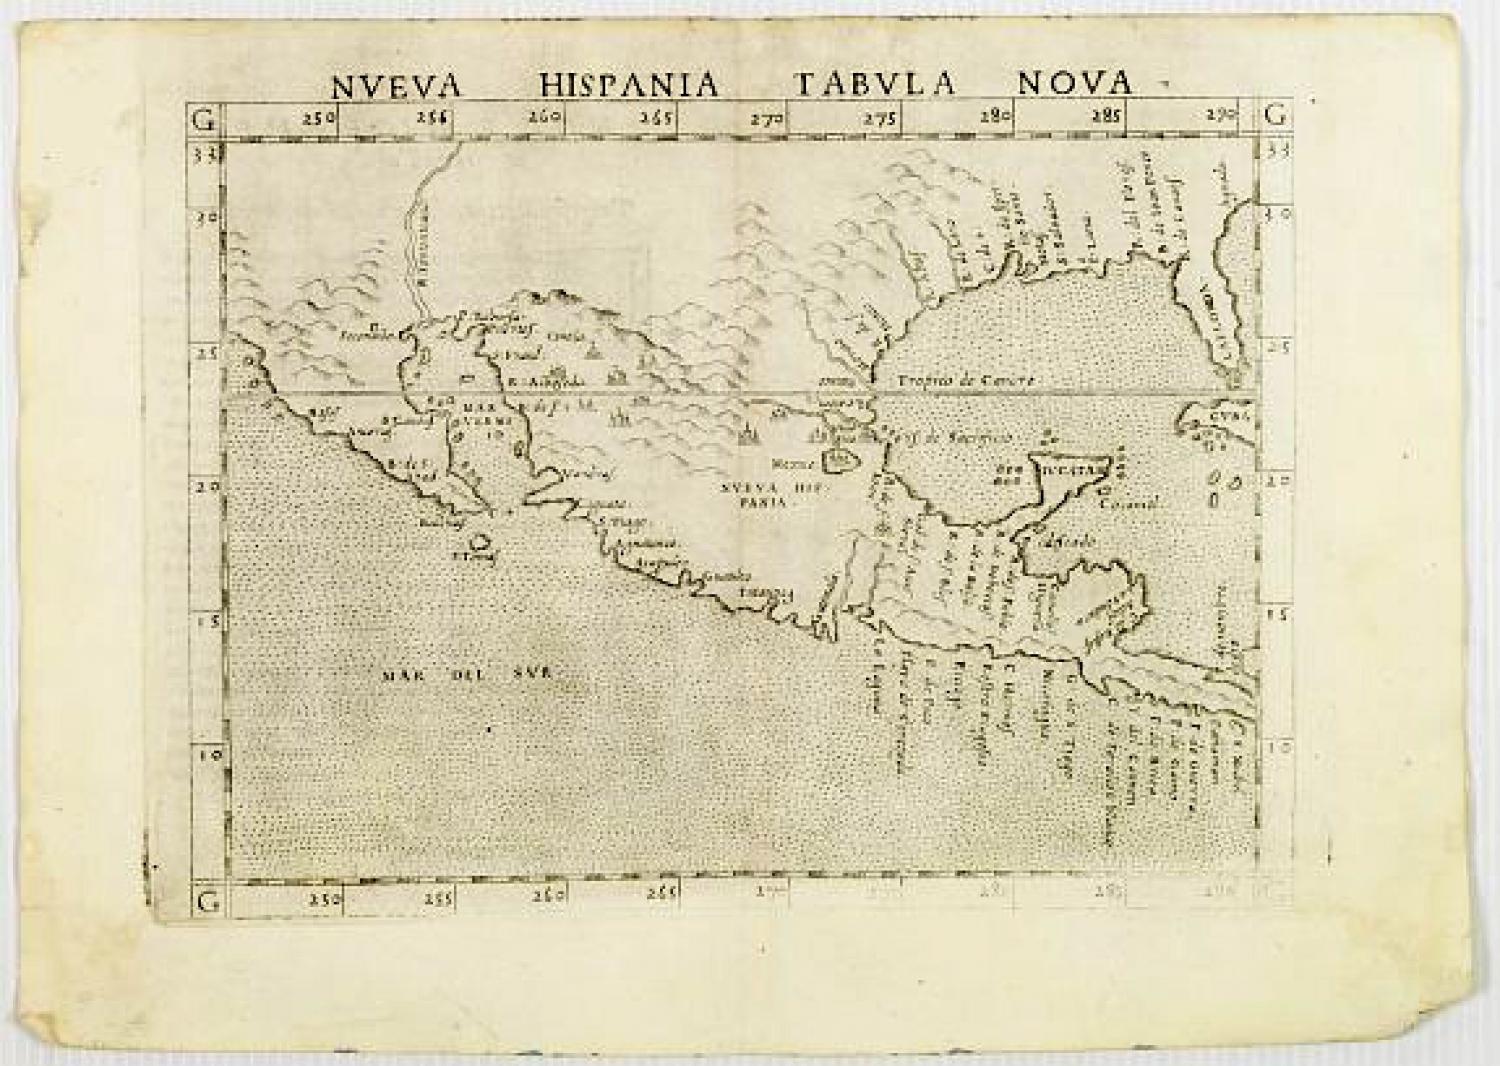 Ruscelli - Nueva Hispania tabula nova